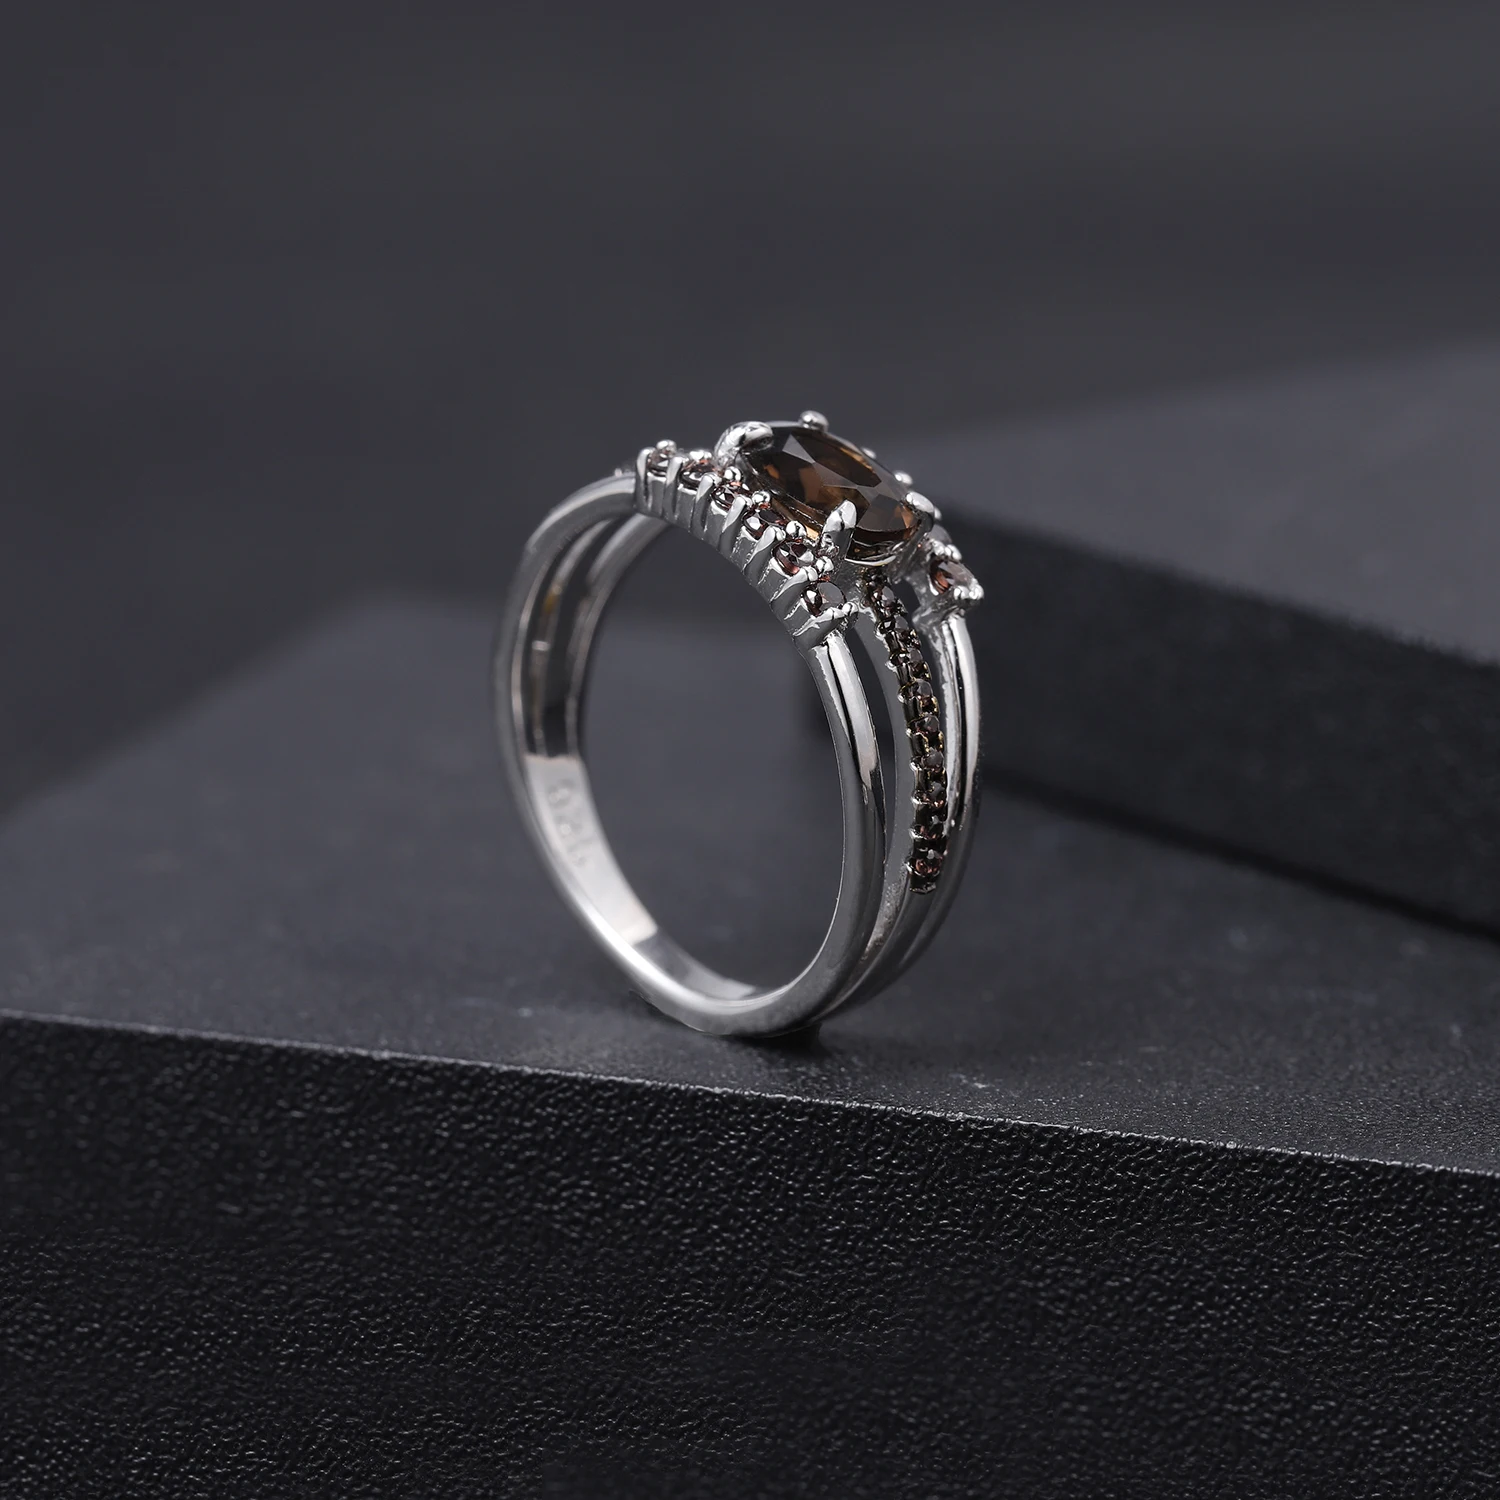 GEM'S BALLET, 0.75Ct, натуральный дымчатый кварц, драгоценный камень, кольца, 925 пробы, серебро, античный стиль, кольцо для женщин, хорошее ювелирное изделие